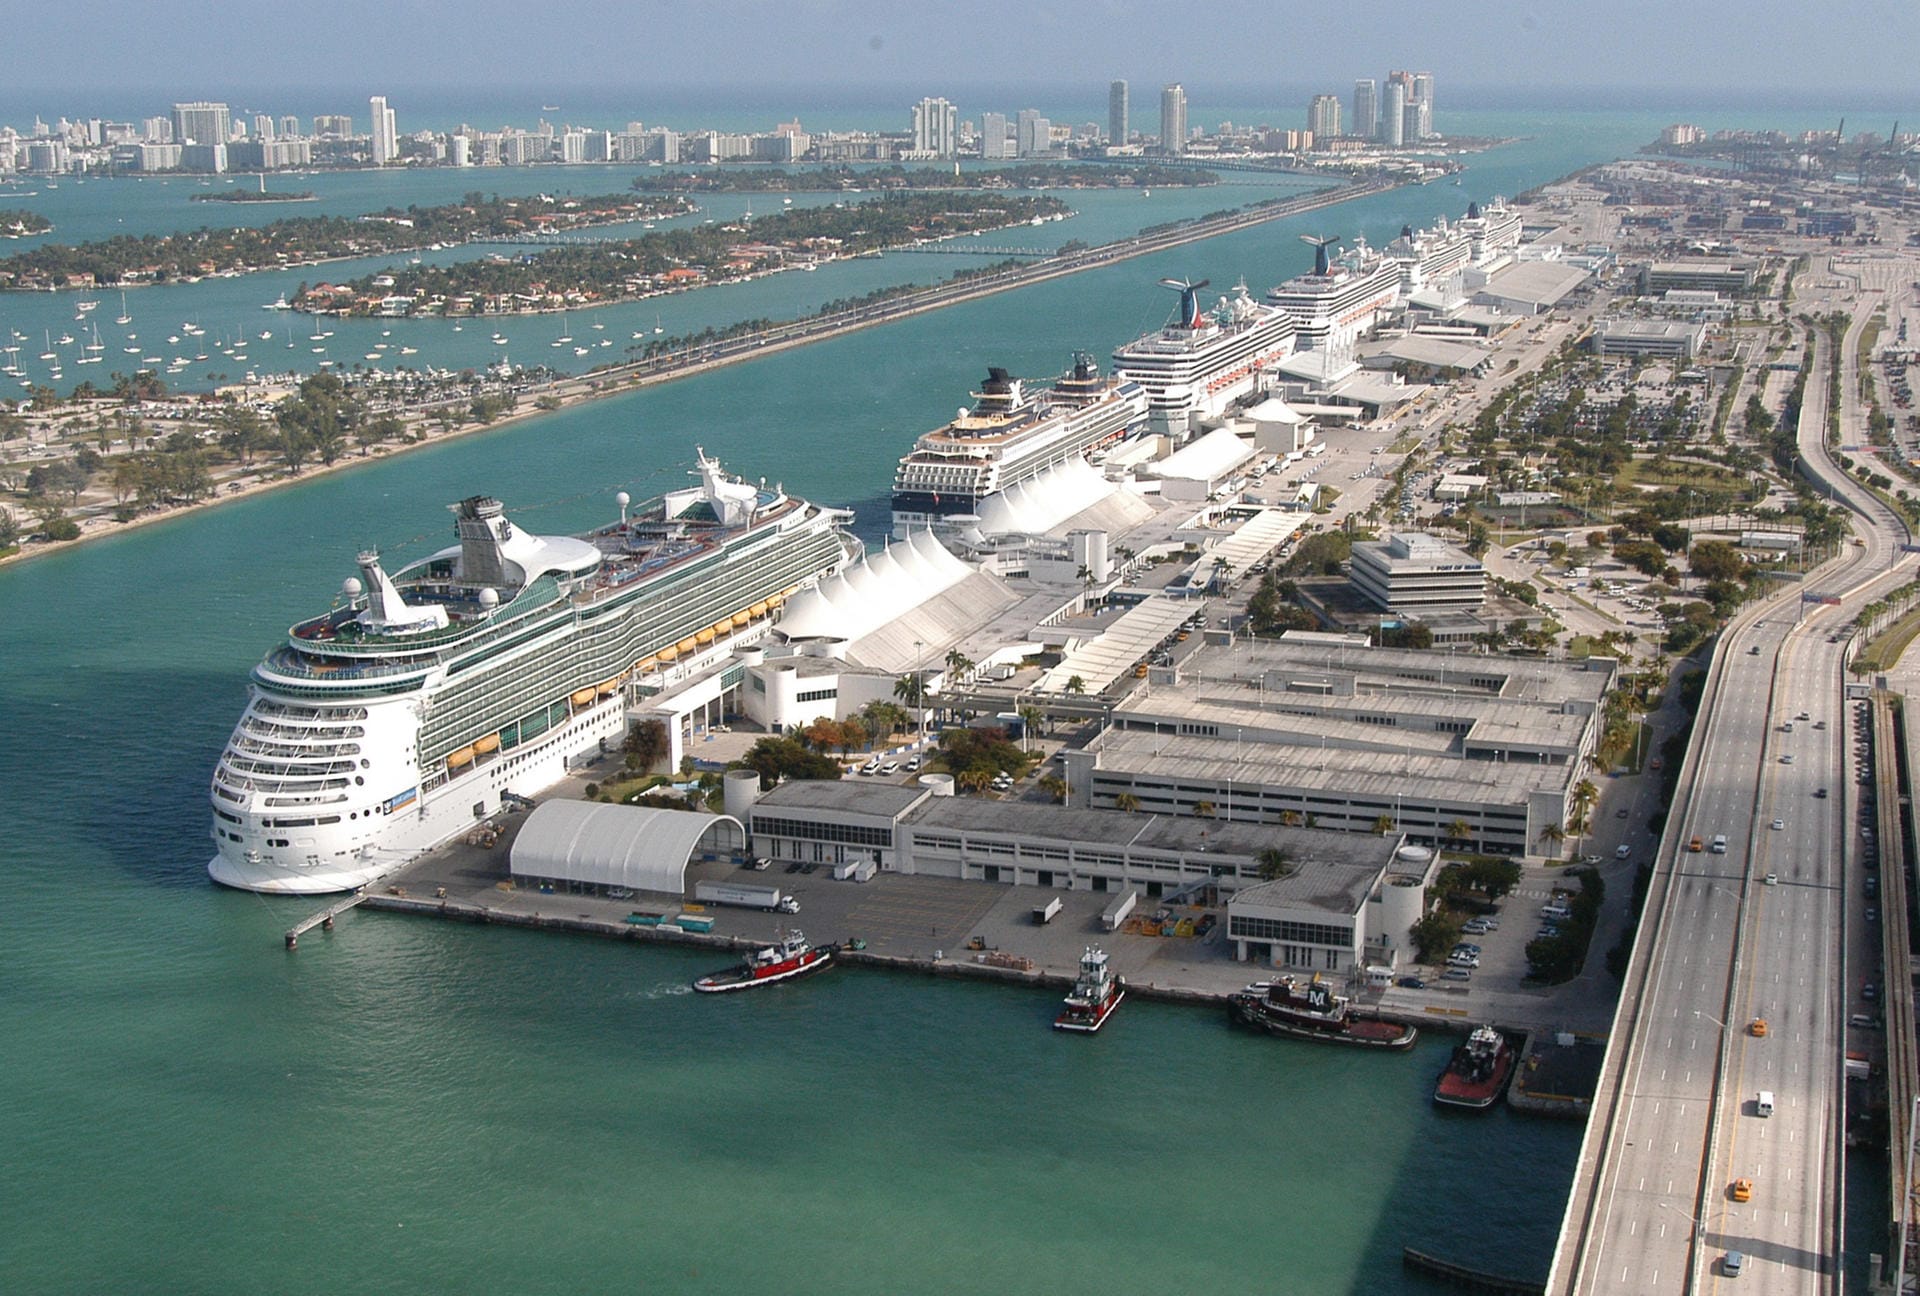 Öko-Tourismus am Strand: Miami wird grün - zumindest ein bisschen